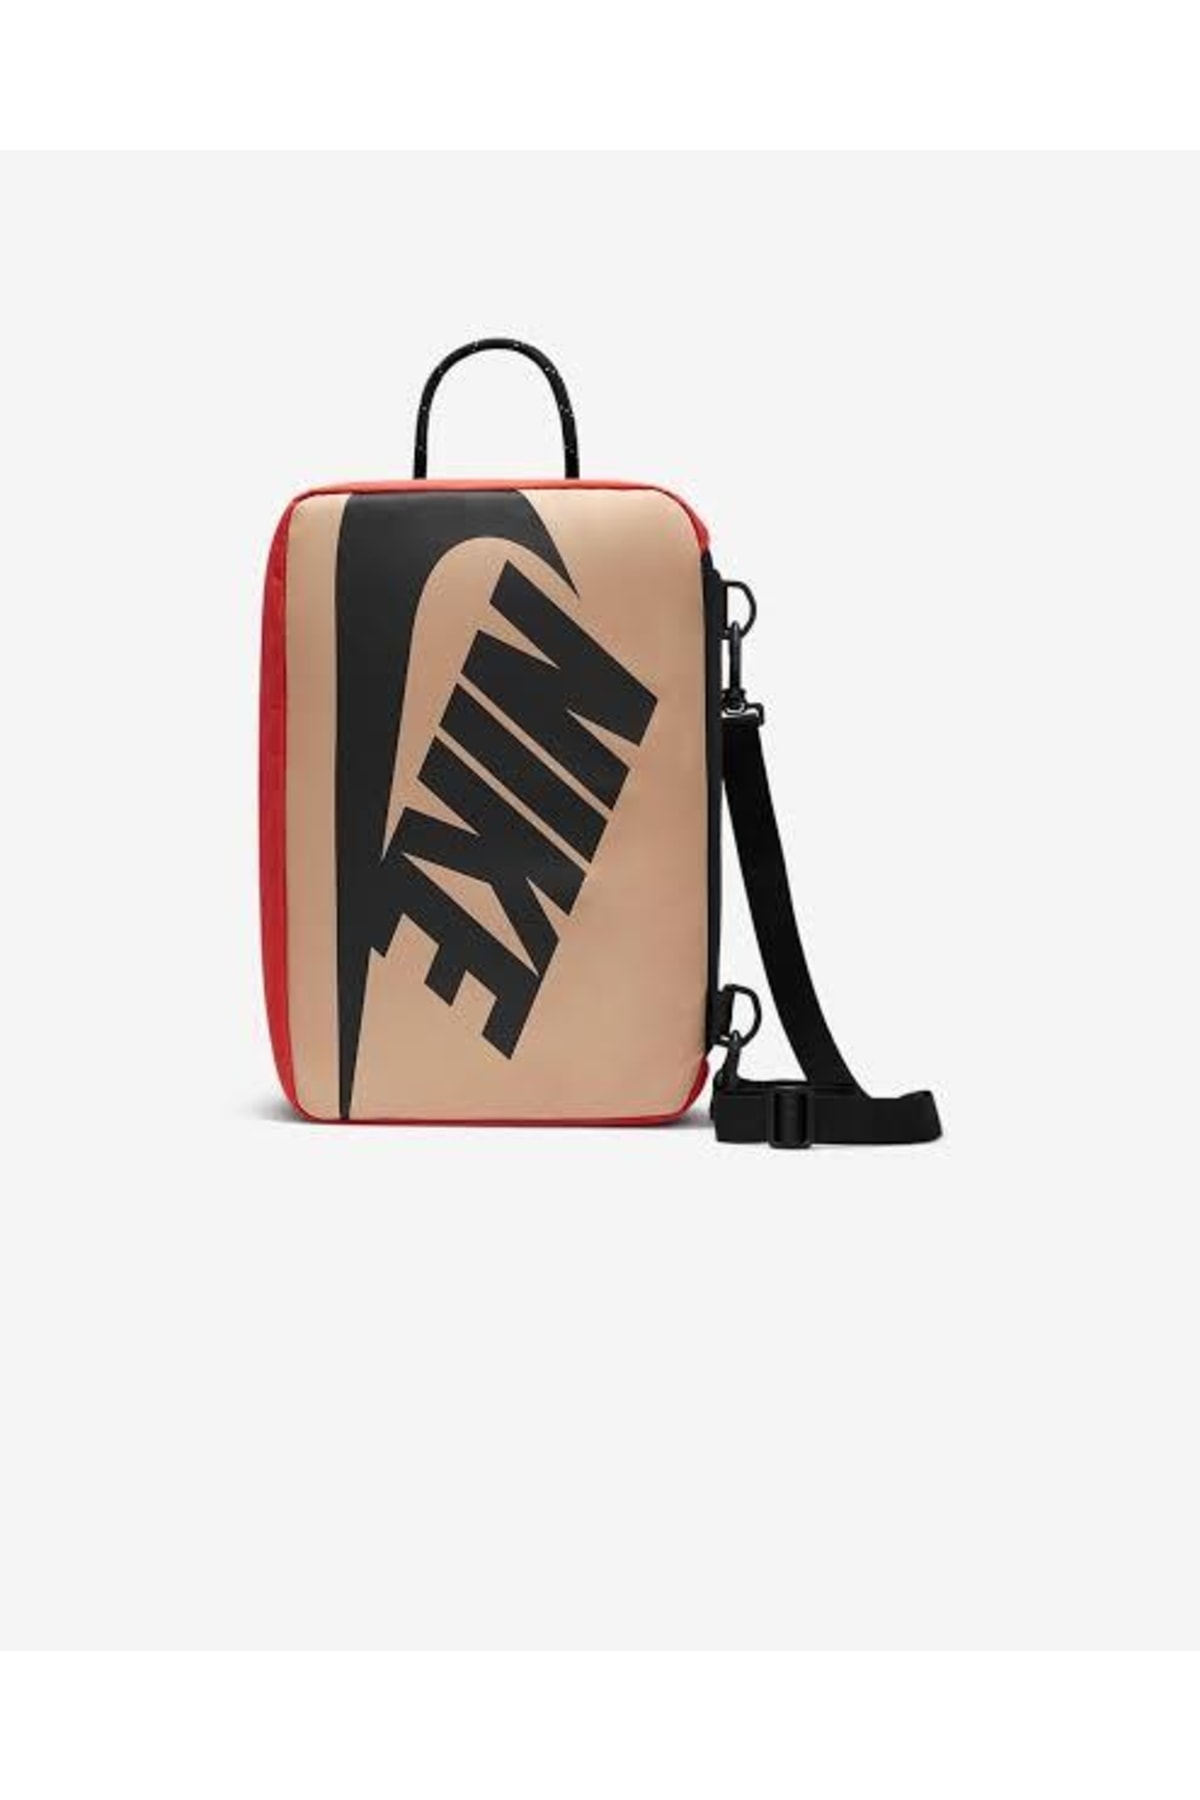 Nike -vintage-12tl-unisex-ayakkabi-cantasi-siyah-bej-acik-kirmizi